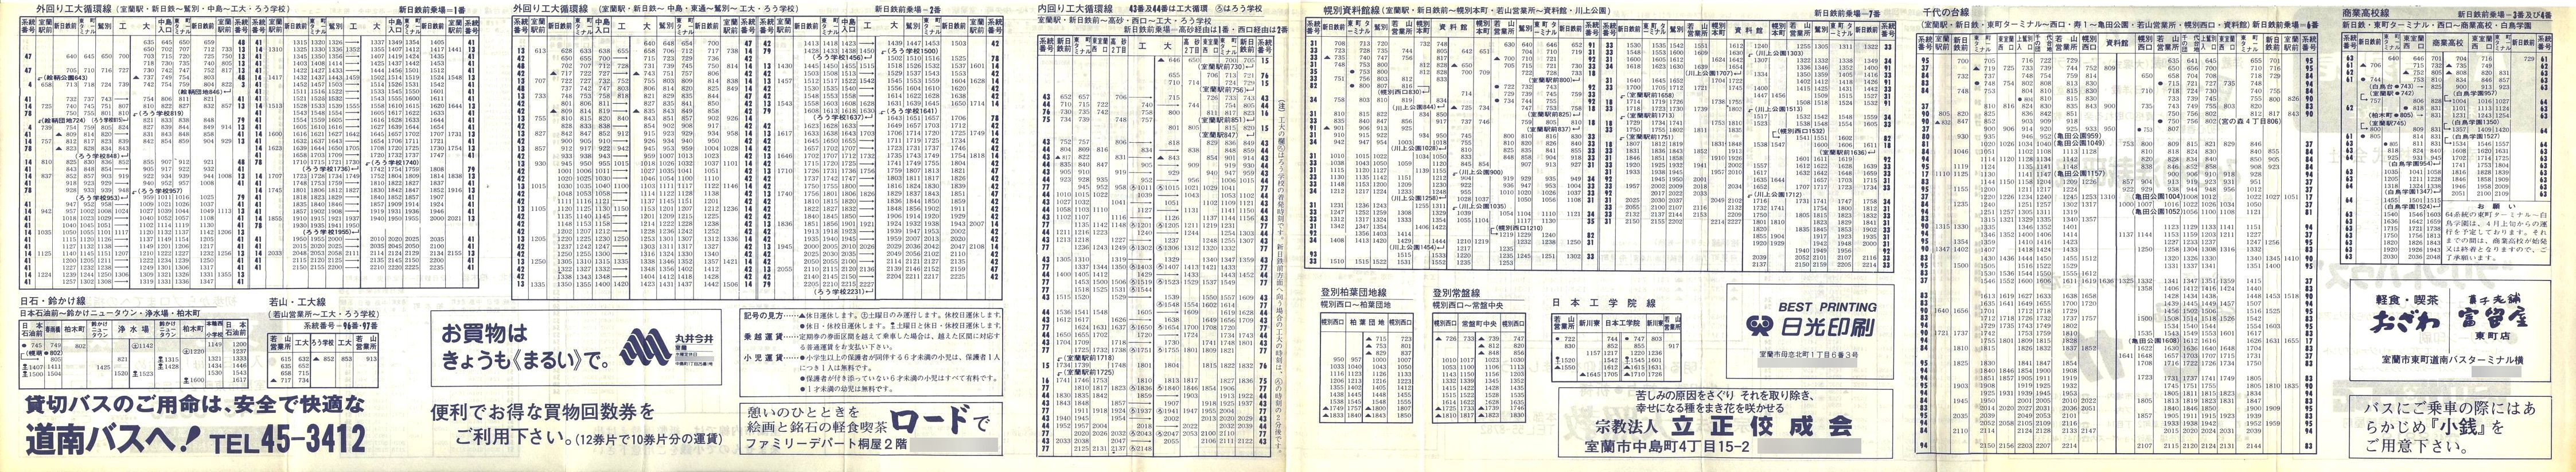 1986-03-01改正_道南バス_室蘭市内線時刻表裏面